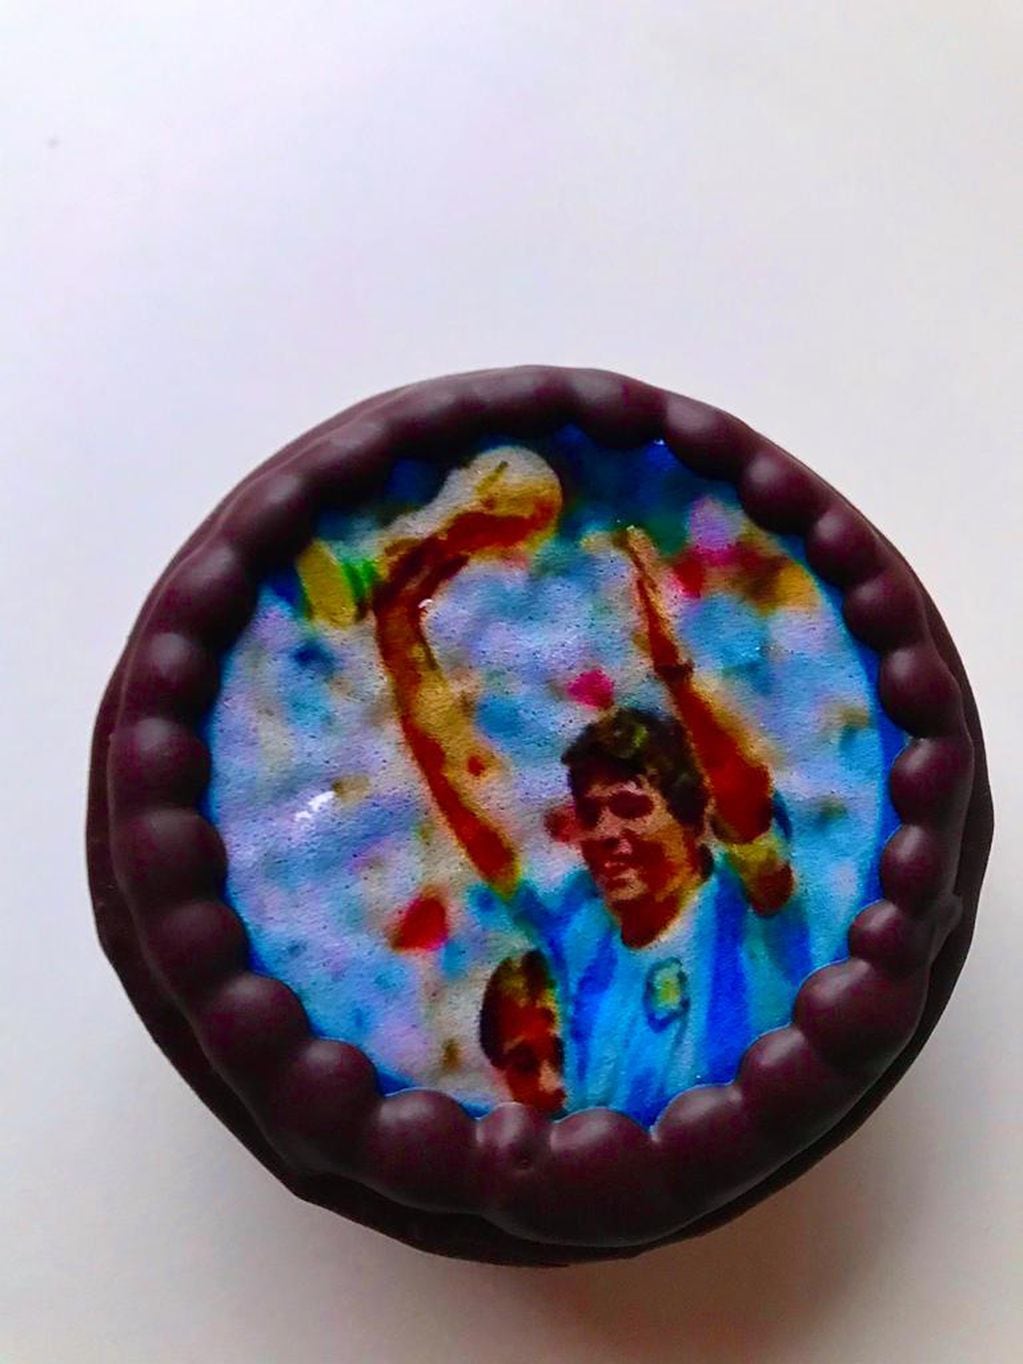 Para el último cumple de Diego Armando Maradona, Di Betta hizo alfajores con la imagen del Diez Eterno.